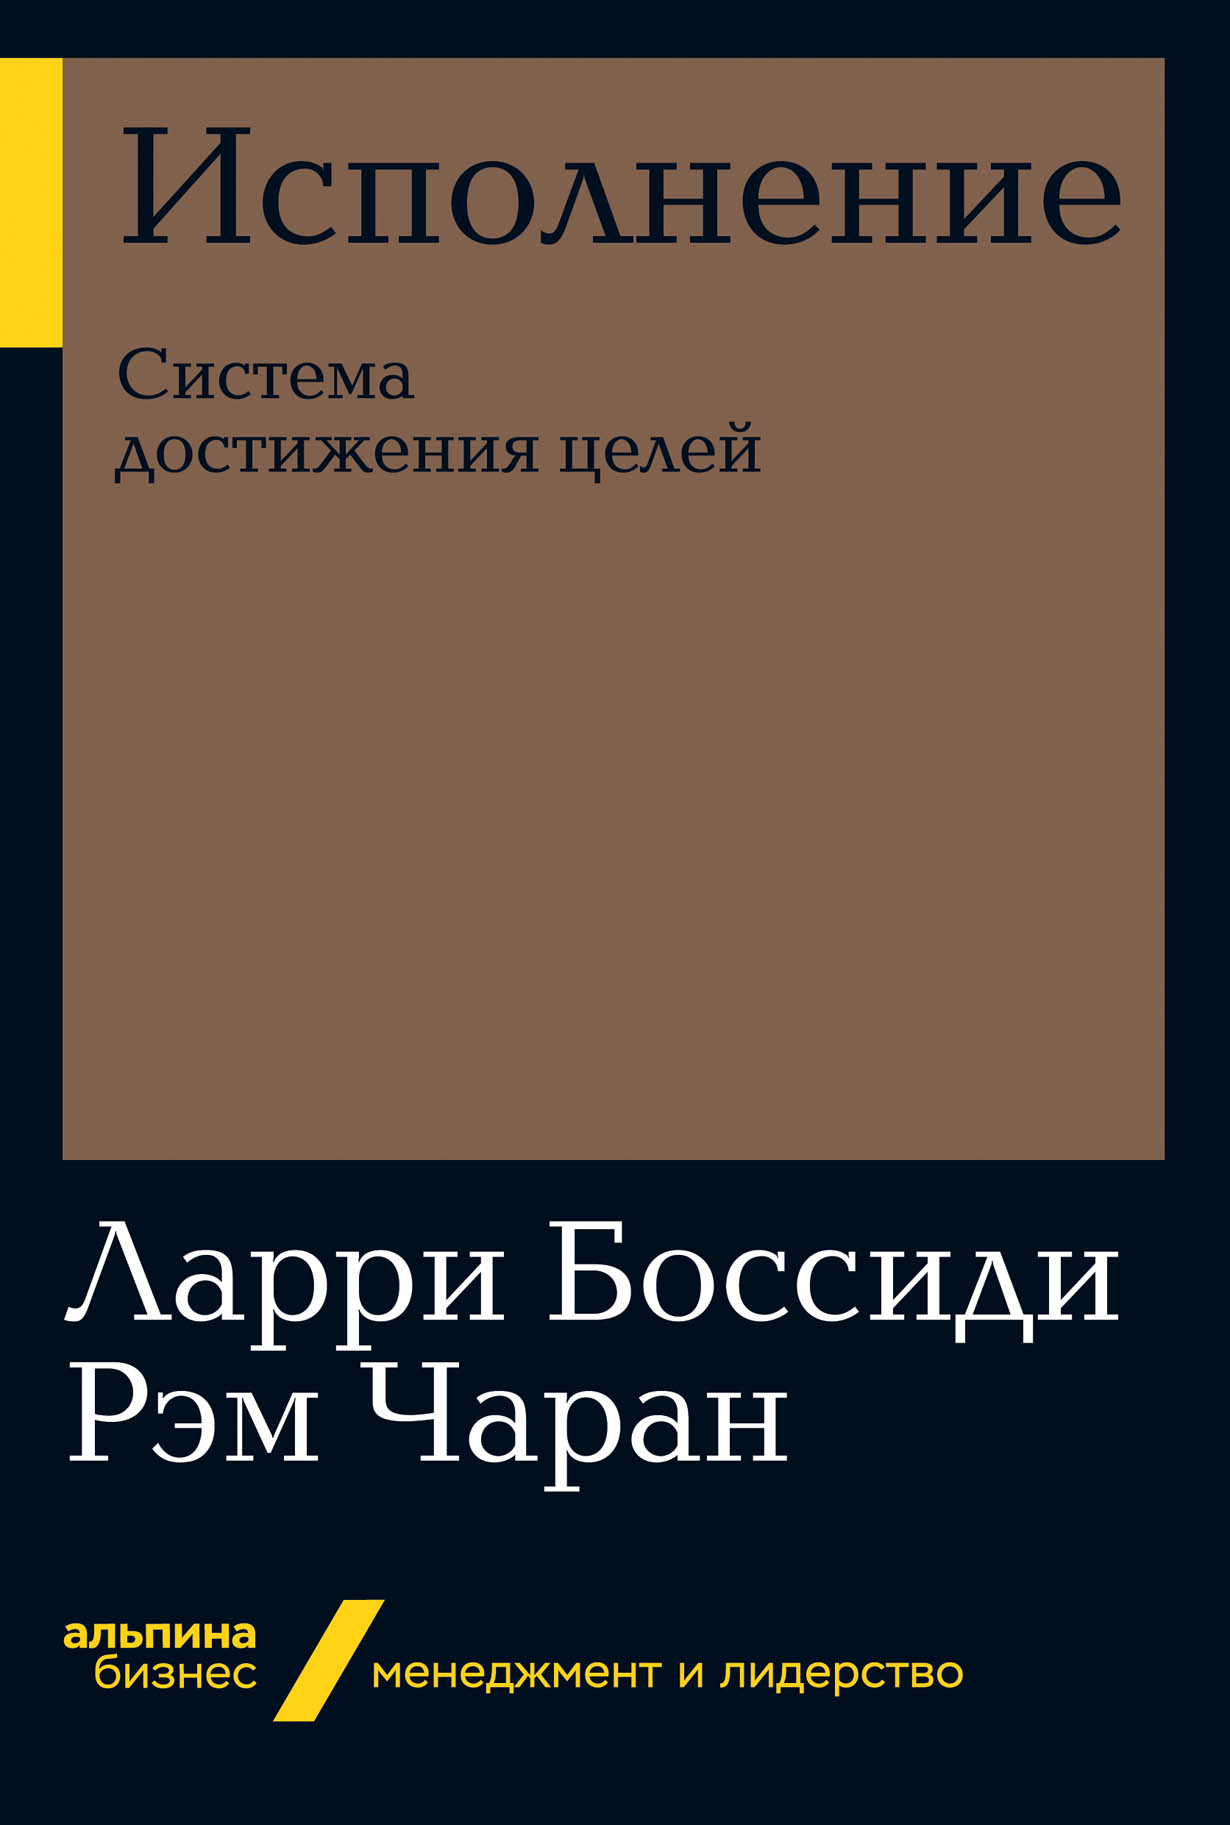 Исполнение: Система достижения целей — купить книгу Ларри Боссиди на сайте  alpinabook.ru